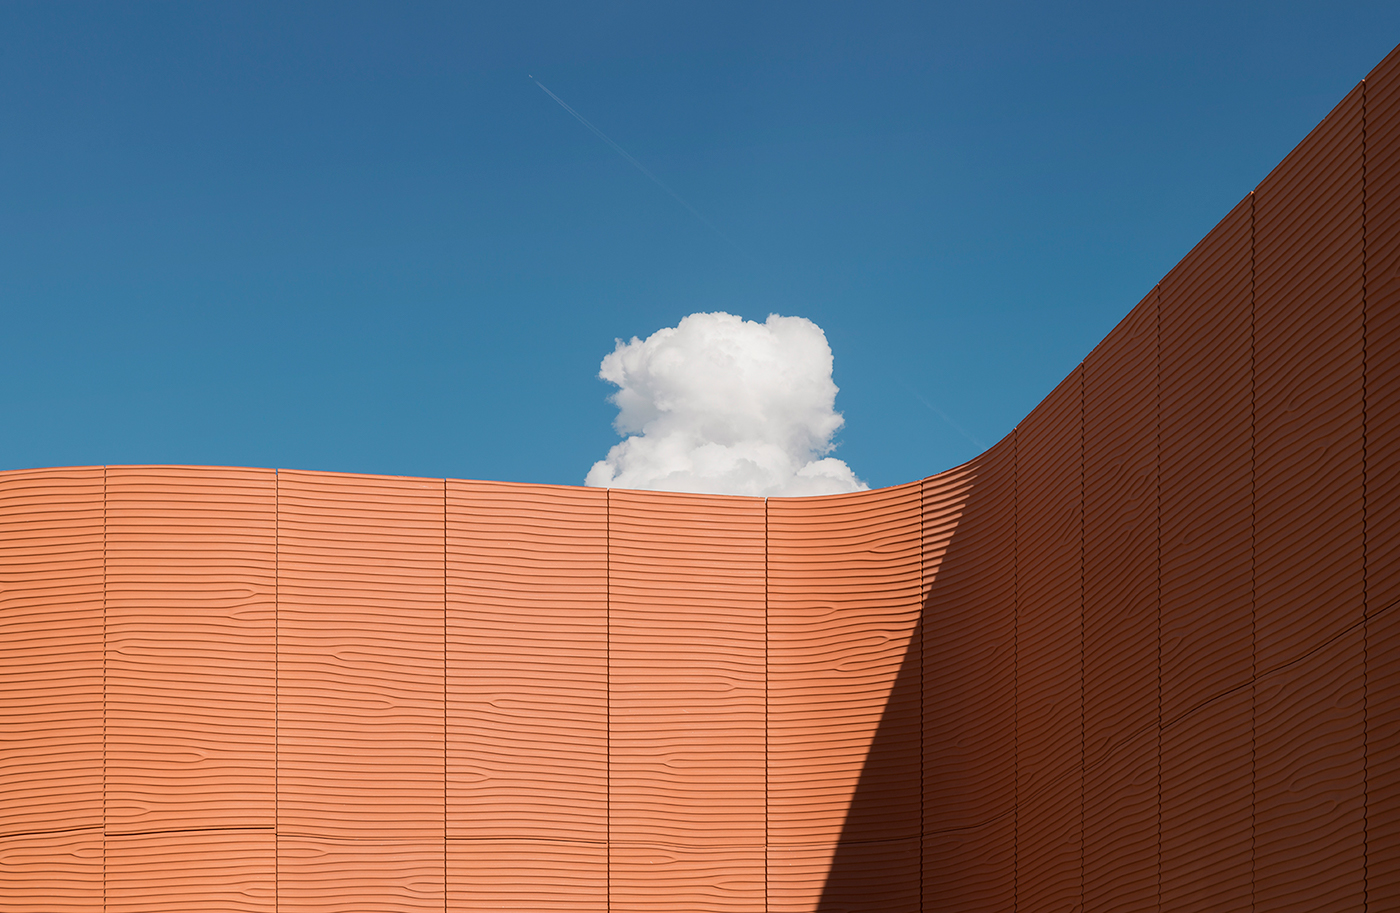 Adobe Portfolio expo expo 2015 Expo 2015 Milano Italy italia ephemeral architecture clouds inspire